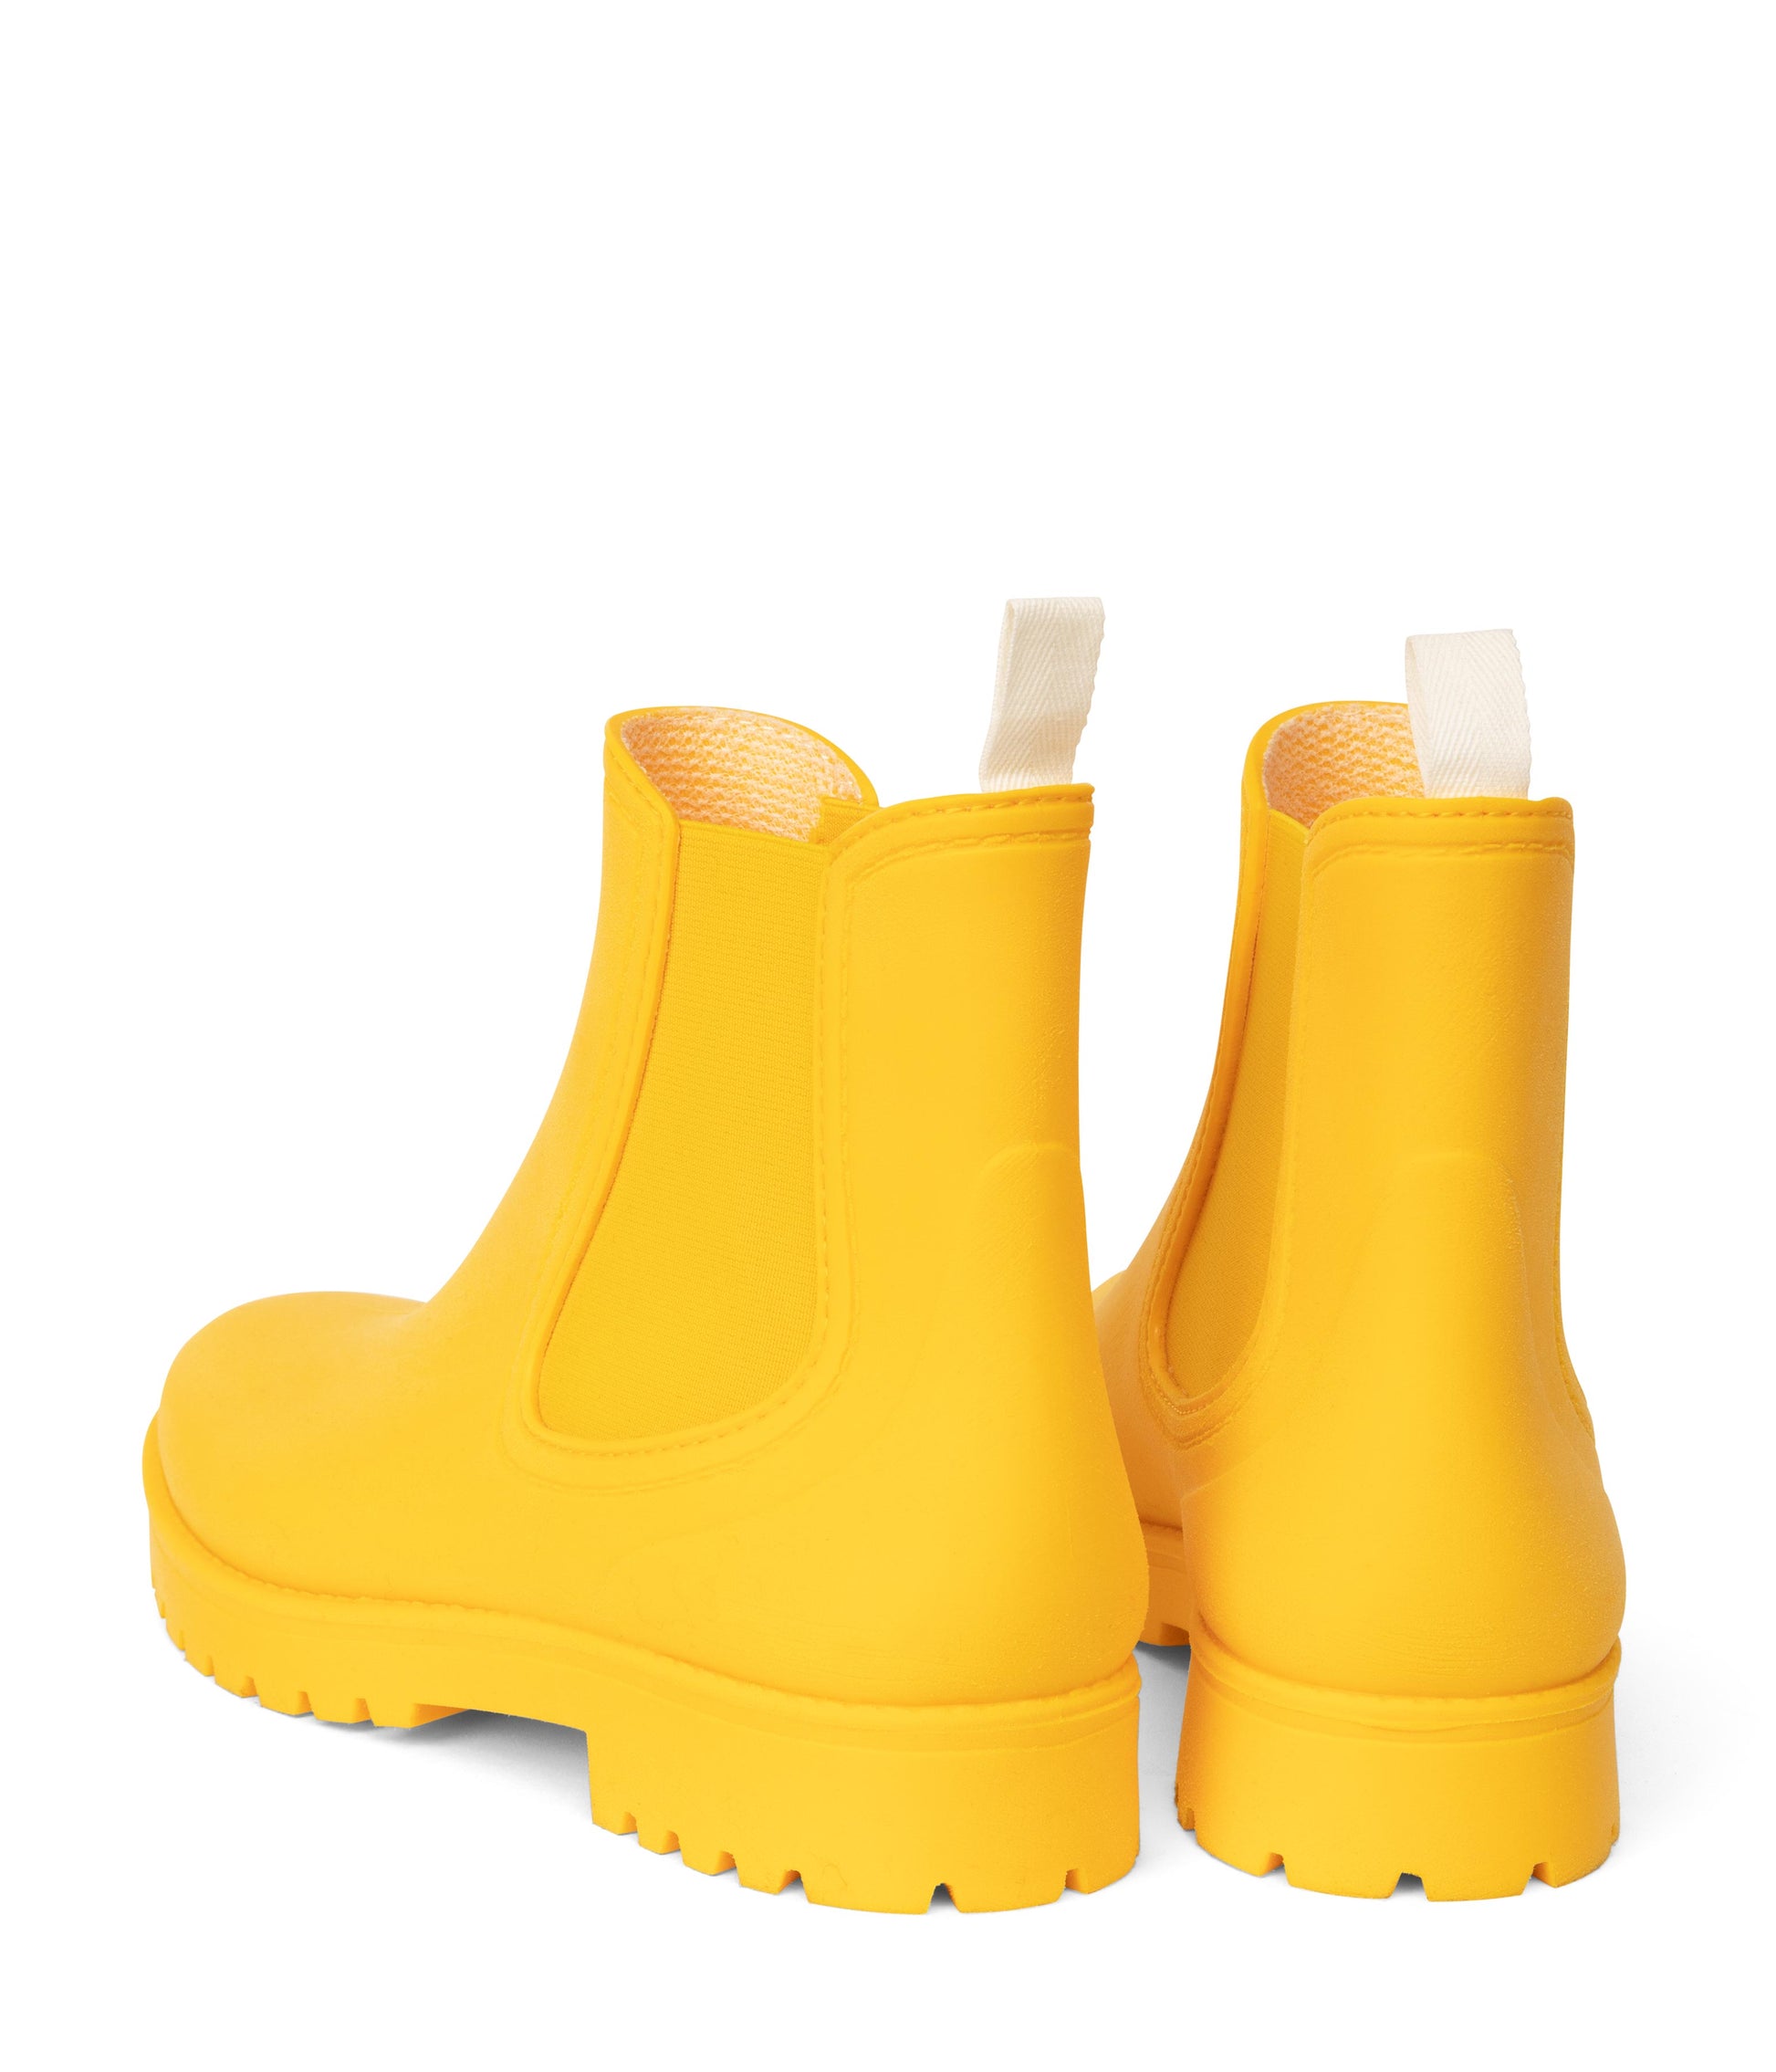 variant:: jaune -- laney shoe jaune